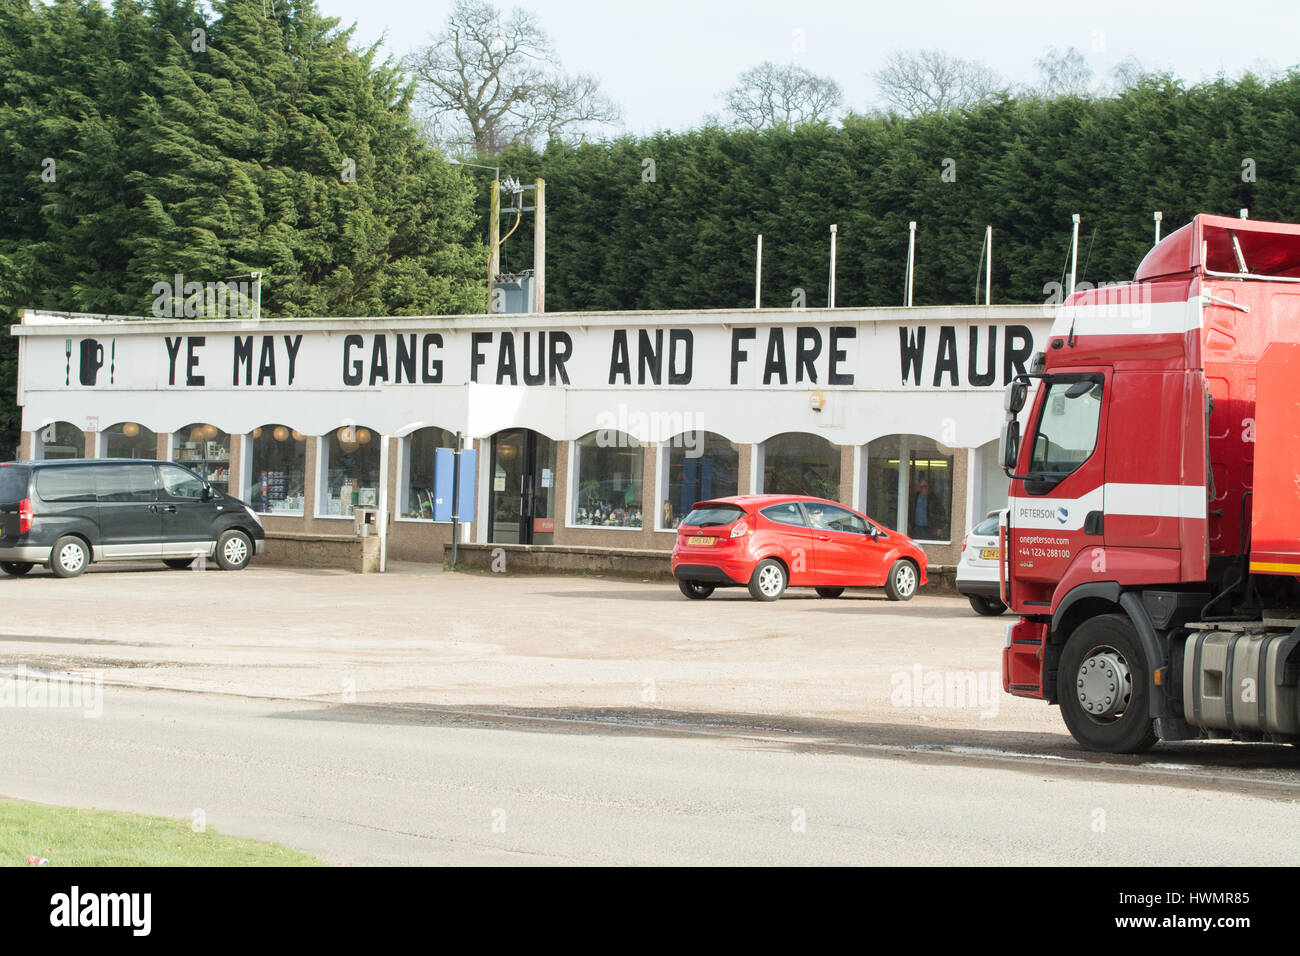 Stracathro Station-service, A90, Brechin, Scotland, UK - Ye gang mai tarif waur un Fauré - vous pouvez aller plus loin et faire bien pire dans l'écossais Banque D'Images